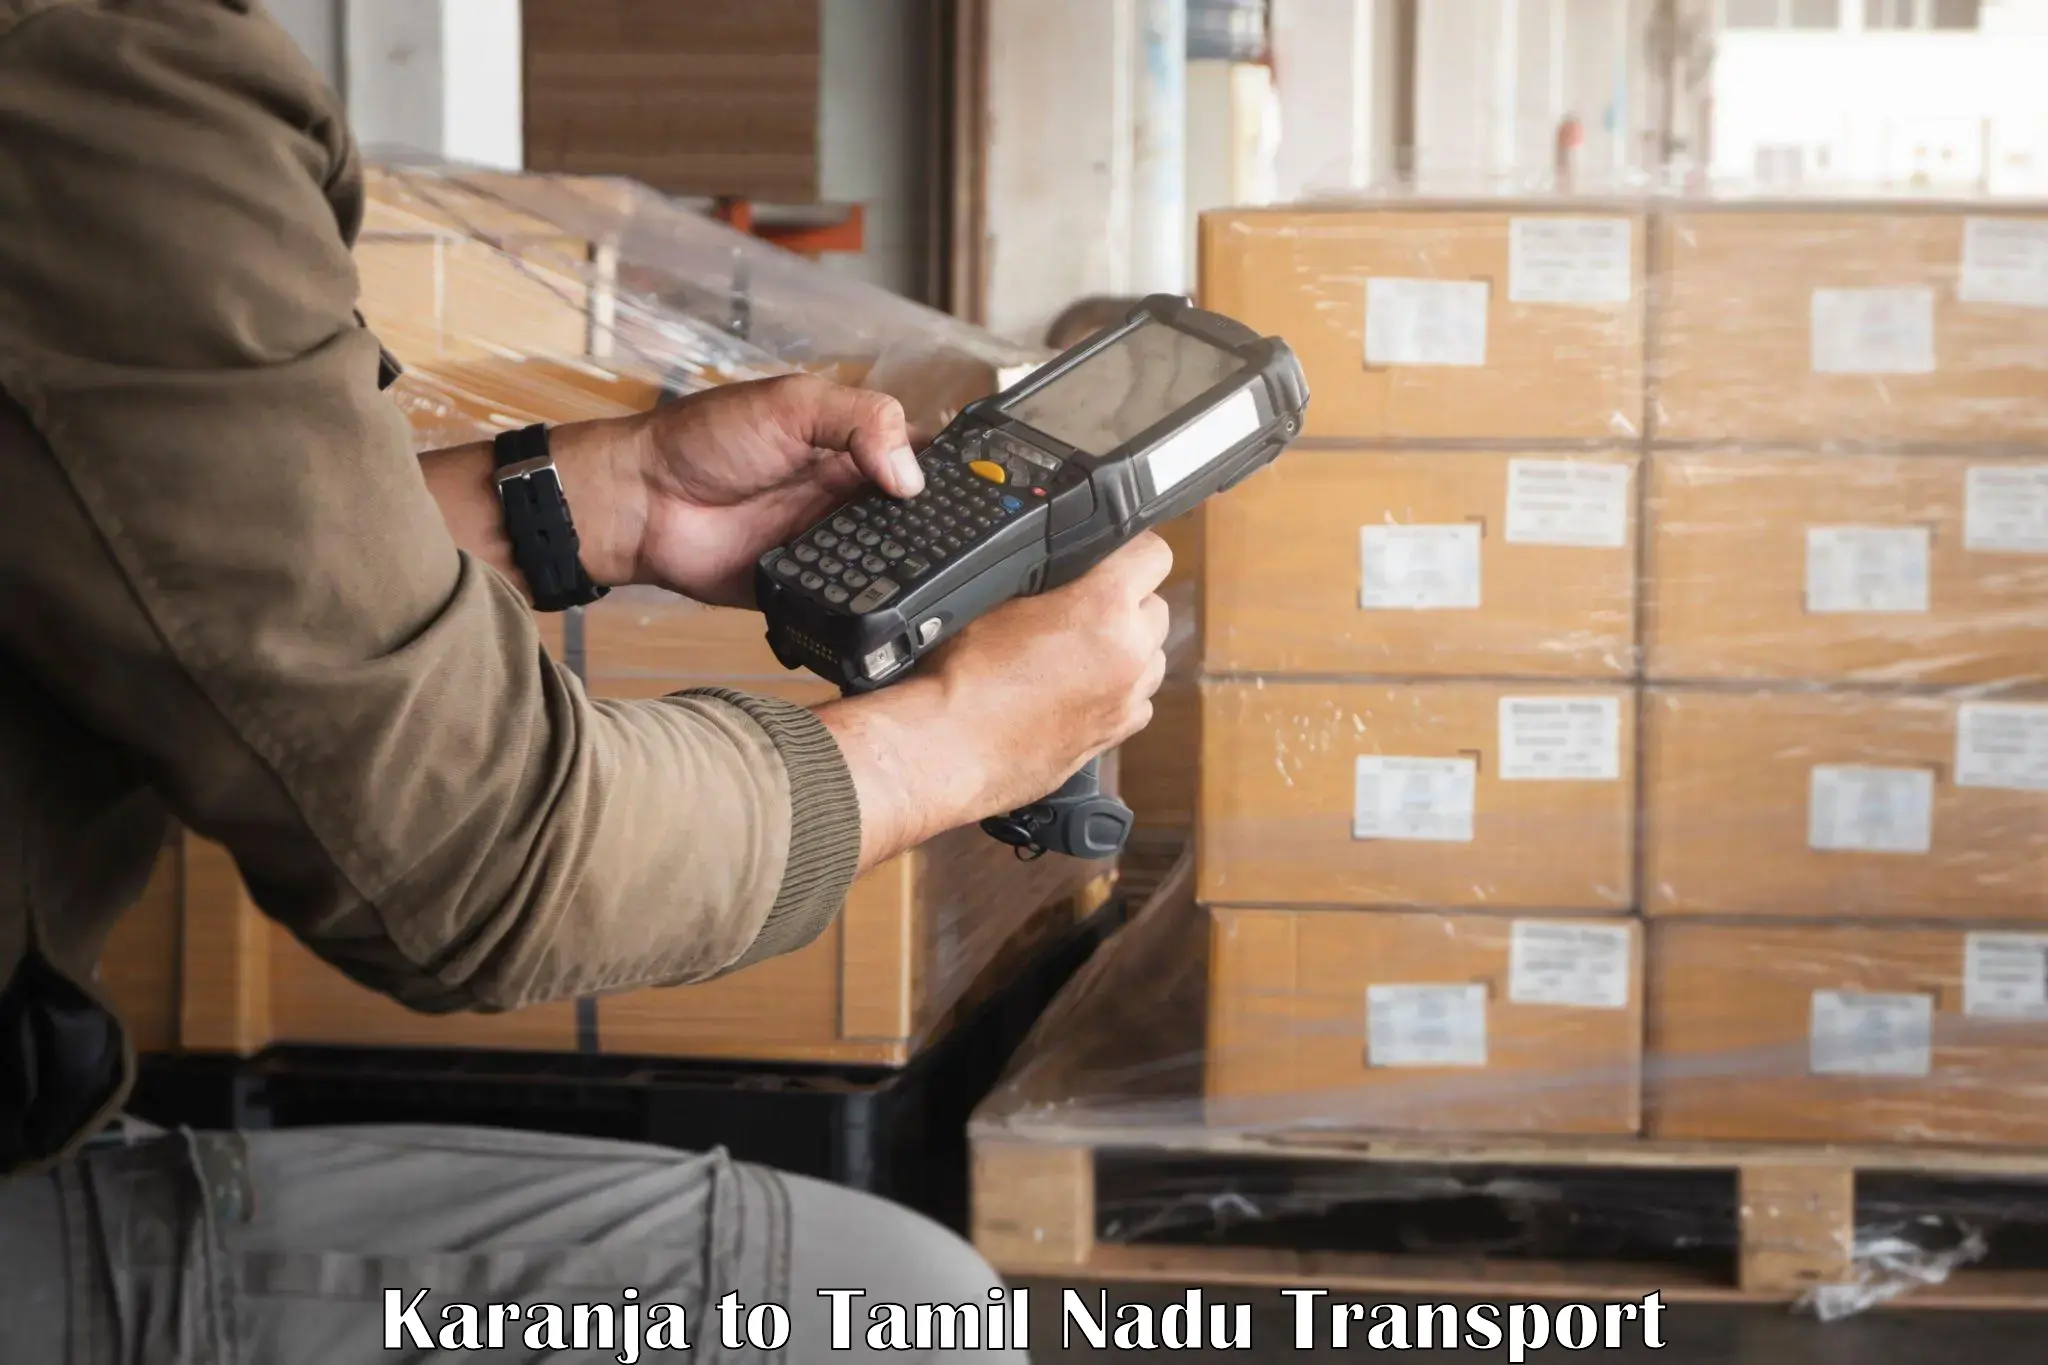 Air freight transport services Karanja to Kalpakkam